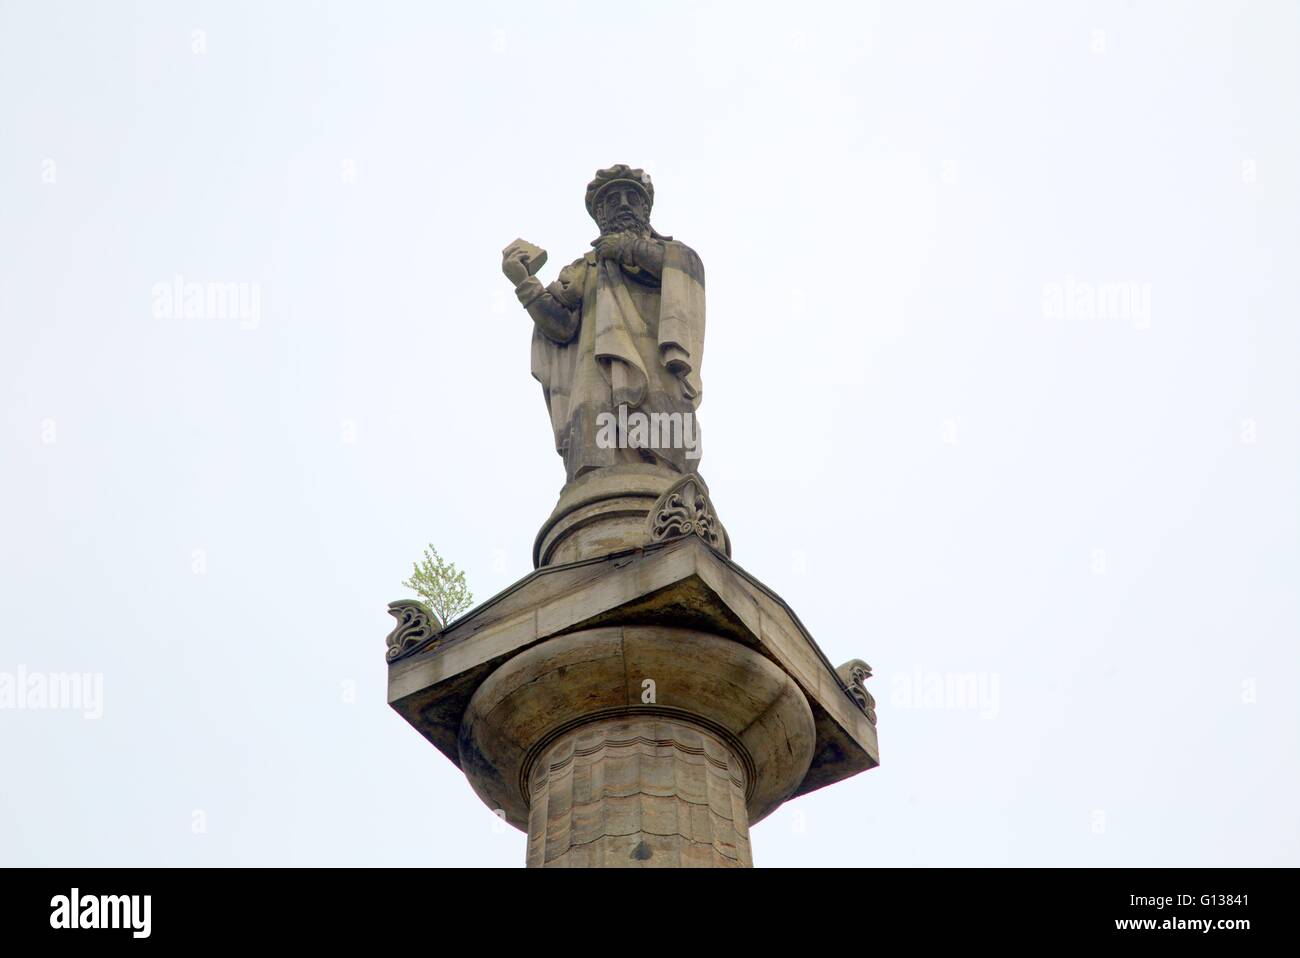 Grabstein Denkmal Statue von und zum Gedenken an die Calvinist John Knox Nekropole, Glasgow. Scotland,U.K Stockfoto